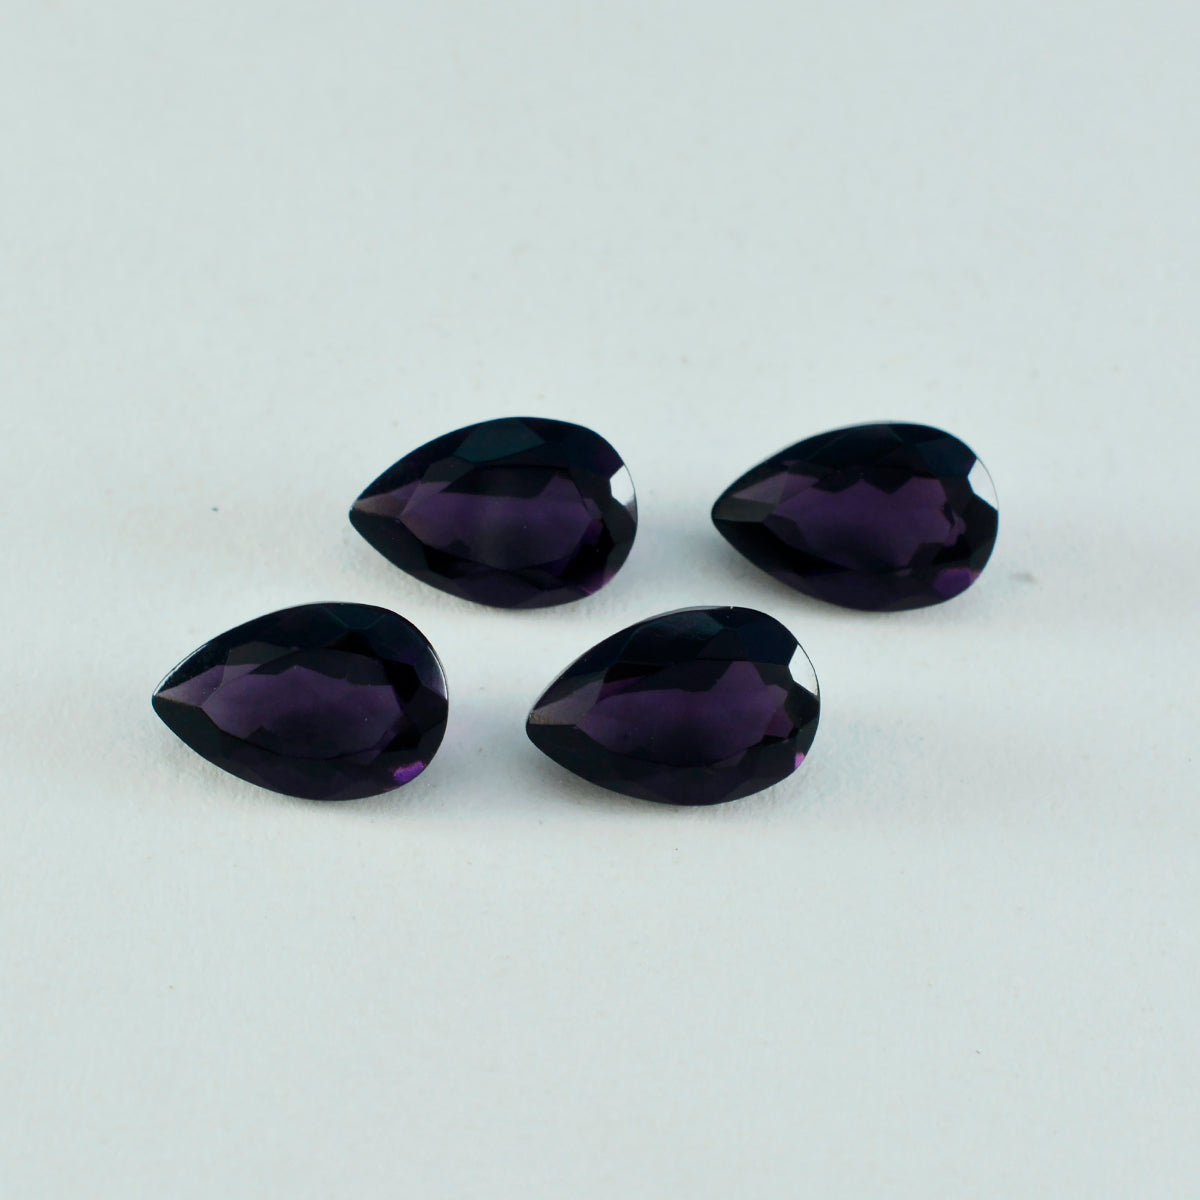 riyogems 1шт фиолетовый аметист cz ограненный 8x12 мм грушевидная форма A+ качество отдельные камни